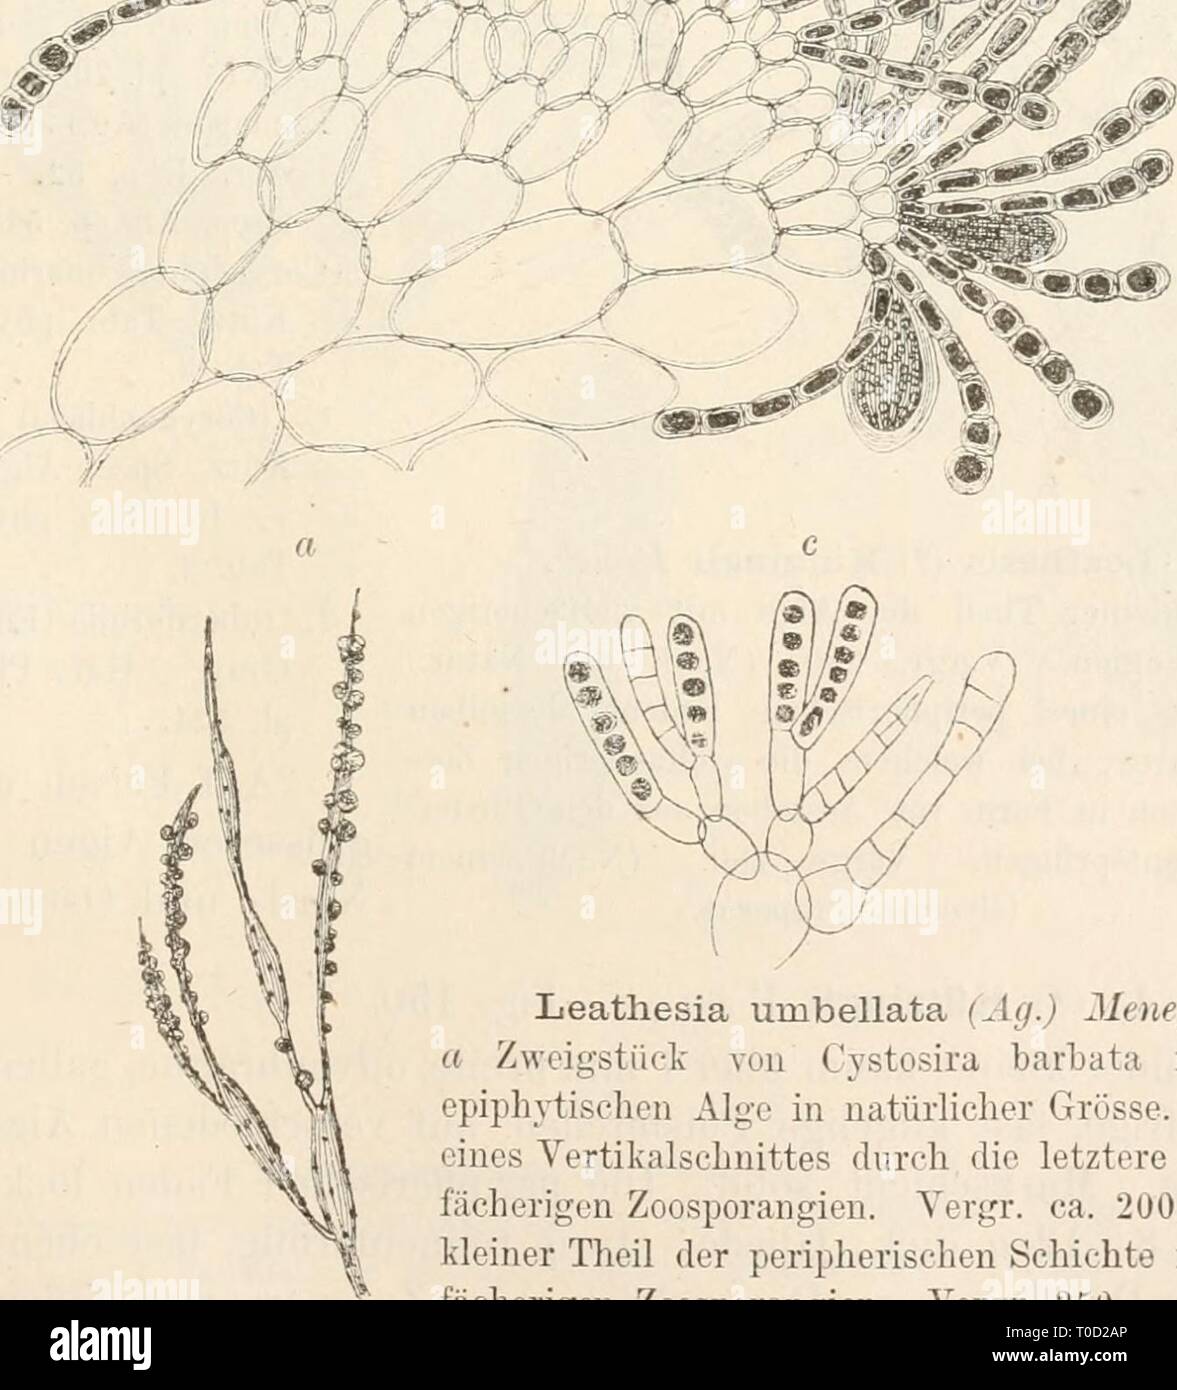 Dr L Rabenhorst's Kryptogamen-Flora von Dr. L. Rabenhorst's Kryptogamen-Flora von Deutschland, Oesterreich und der Schweiz drlrabenhorstskr02rabe Year: 1885  355 Corynephoni unibellata Ag. Aiifz. N. 25. L. umbellata Menegh. Alg. ital. ]). 307. — J. Ag. Spec. Alg. J. p. 51. Corynophlaea unibellata Kütz. Spec. Alg. p. 543. — Id. Tab. phyc. VIII. Tab. 2. — J. Ag. Till Alg. Syst. II. p. 21 (excl. syn. Cory- nophlaea tlaccida Kütz.). Im adriatischeii Meere; meist auf Cvstosira barbata. 2. L. (lifformis (L.) Ar es eh. Thallus nach dem Standorte sehr verschieden in der Grösse, von kaum 1 mm, bis 12 m Stock Photo